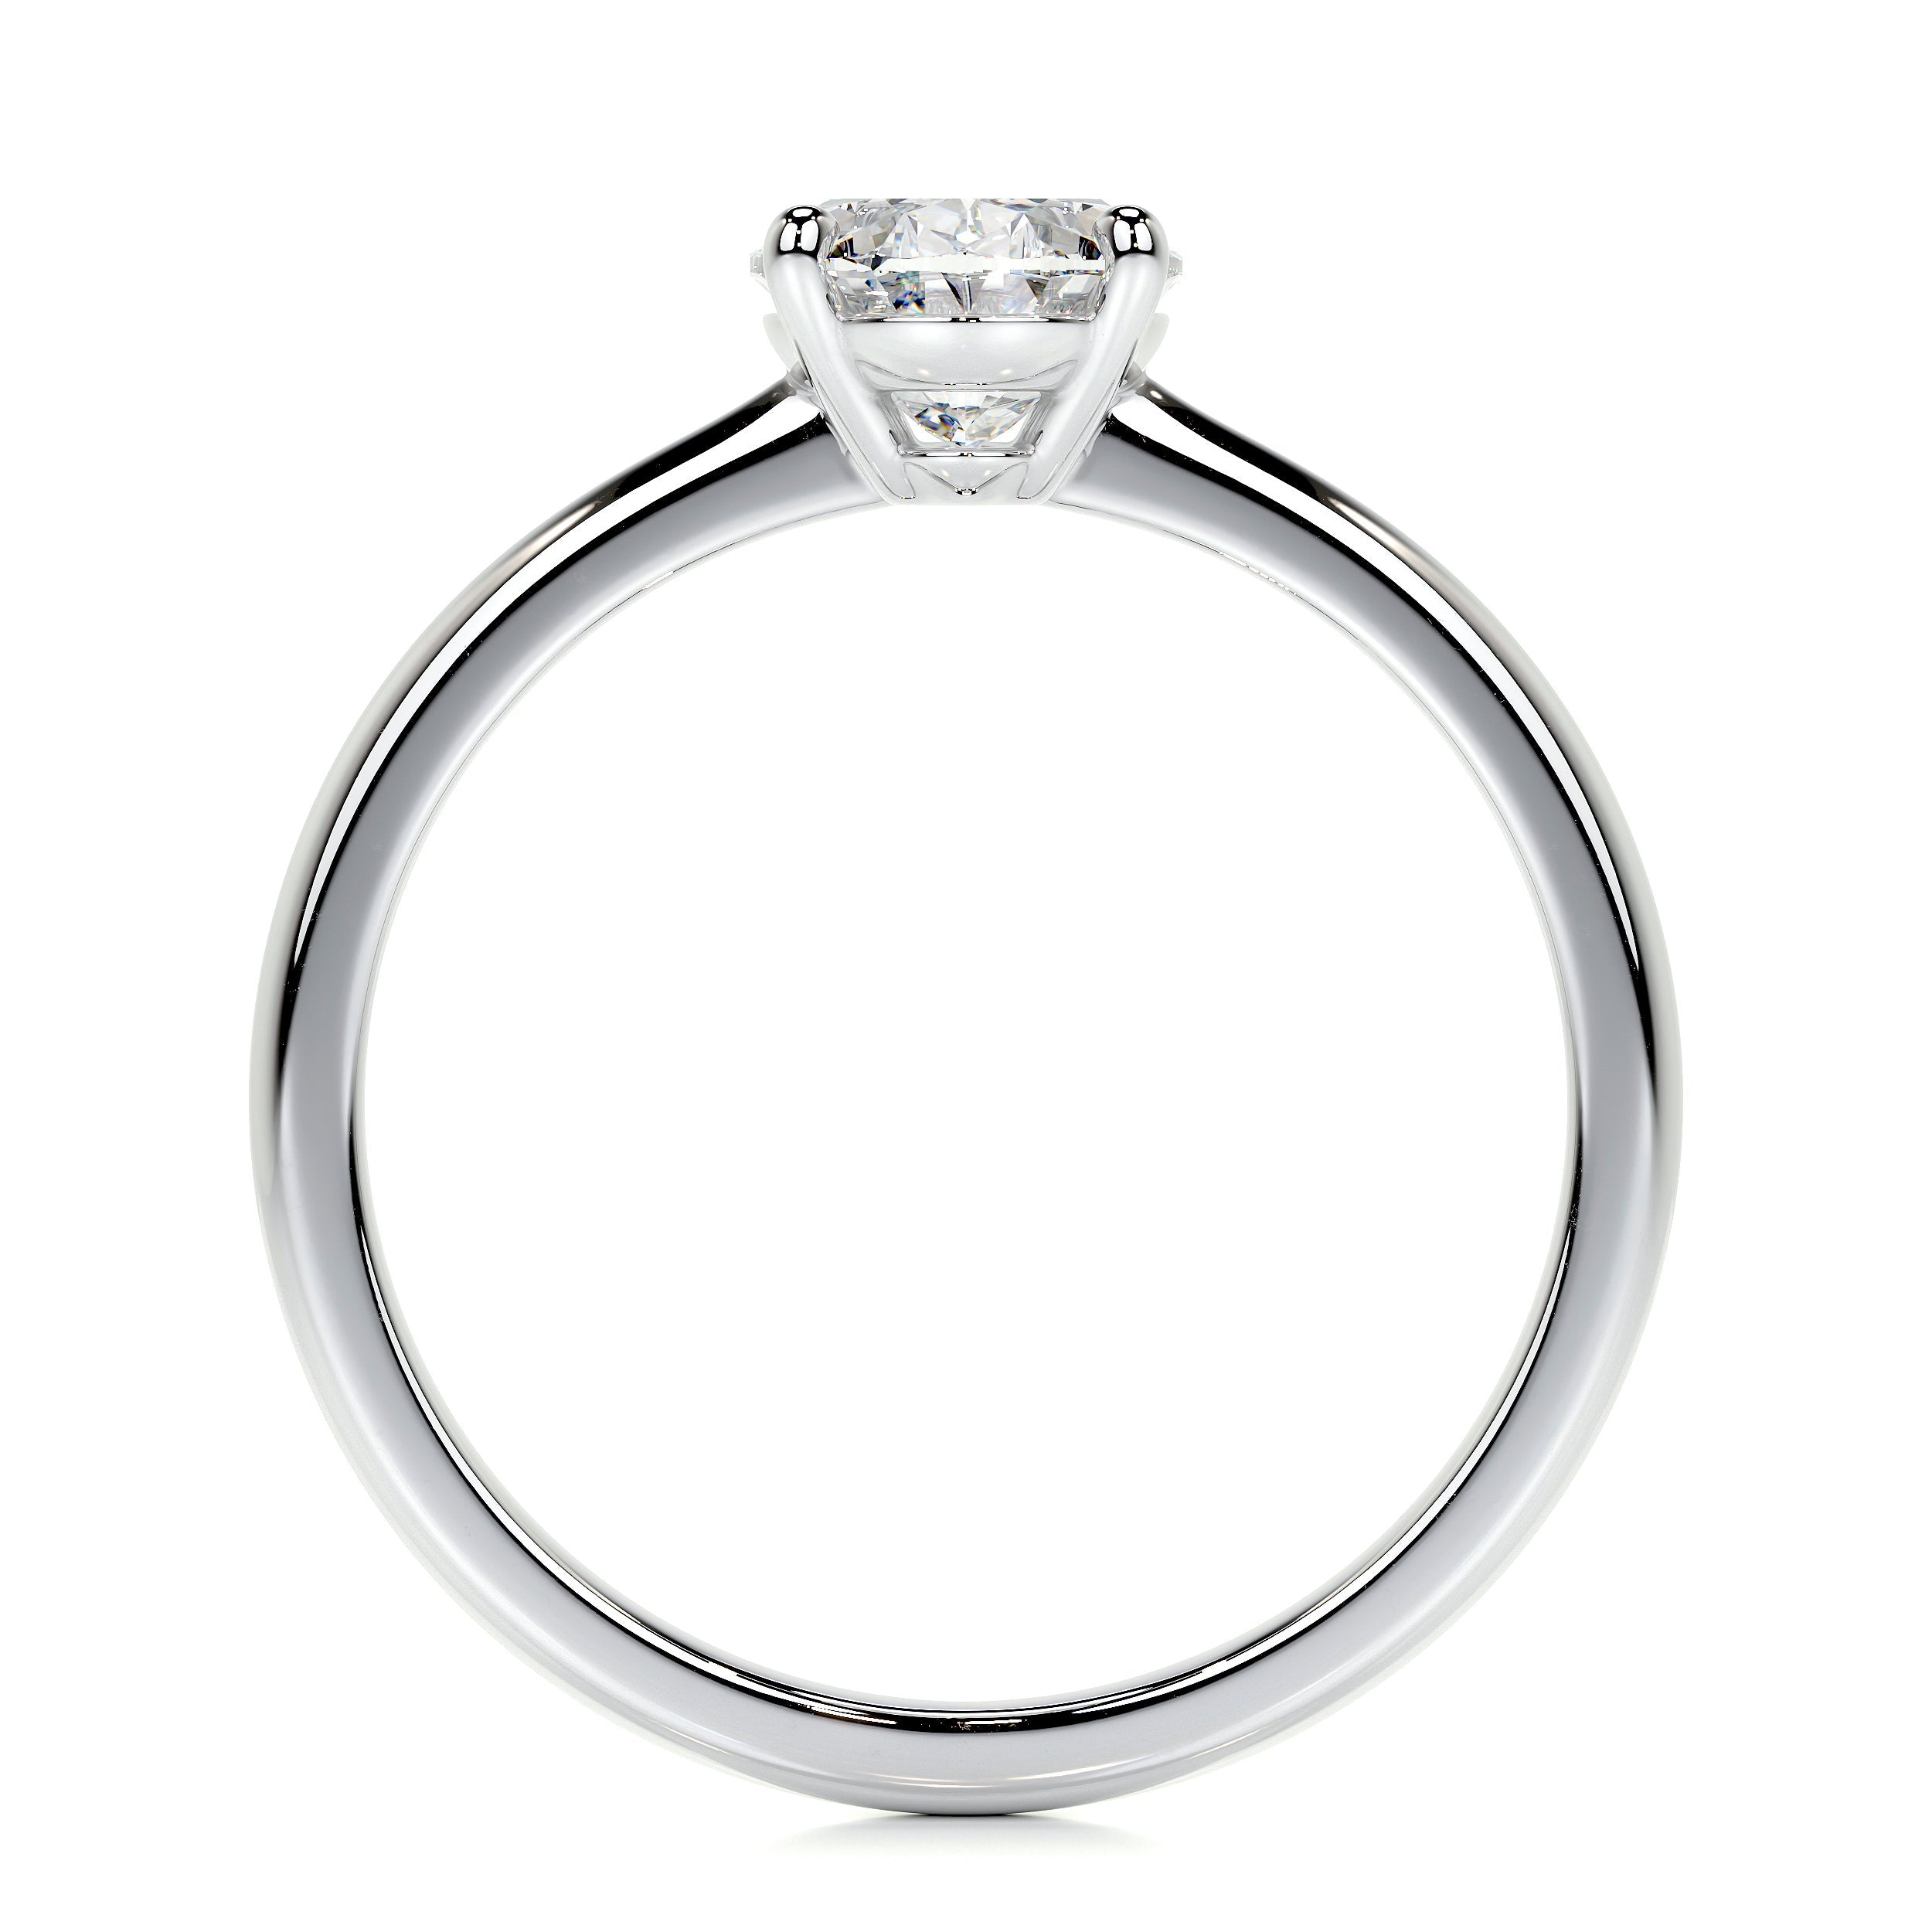 Julia Lab Grown Diamond Ring   (1 Carat) -Platinum